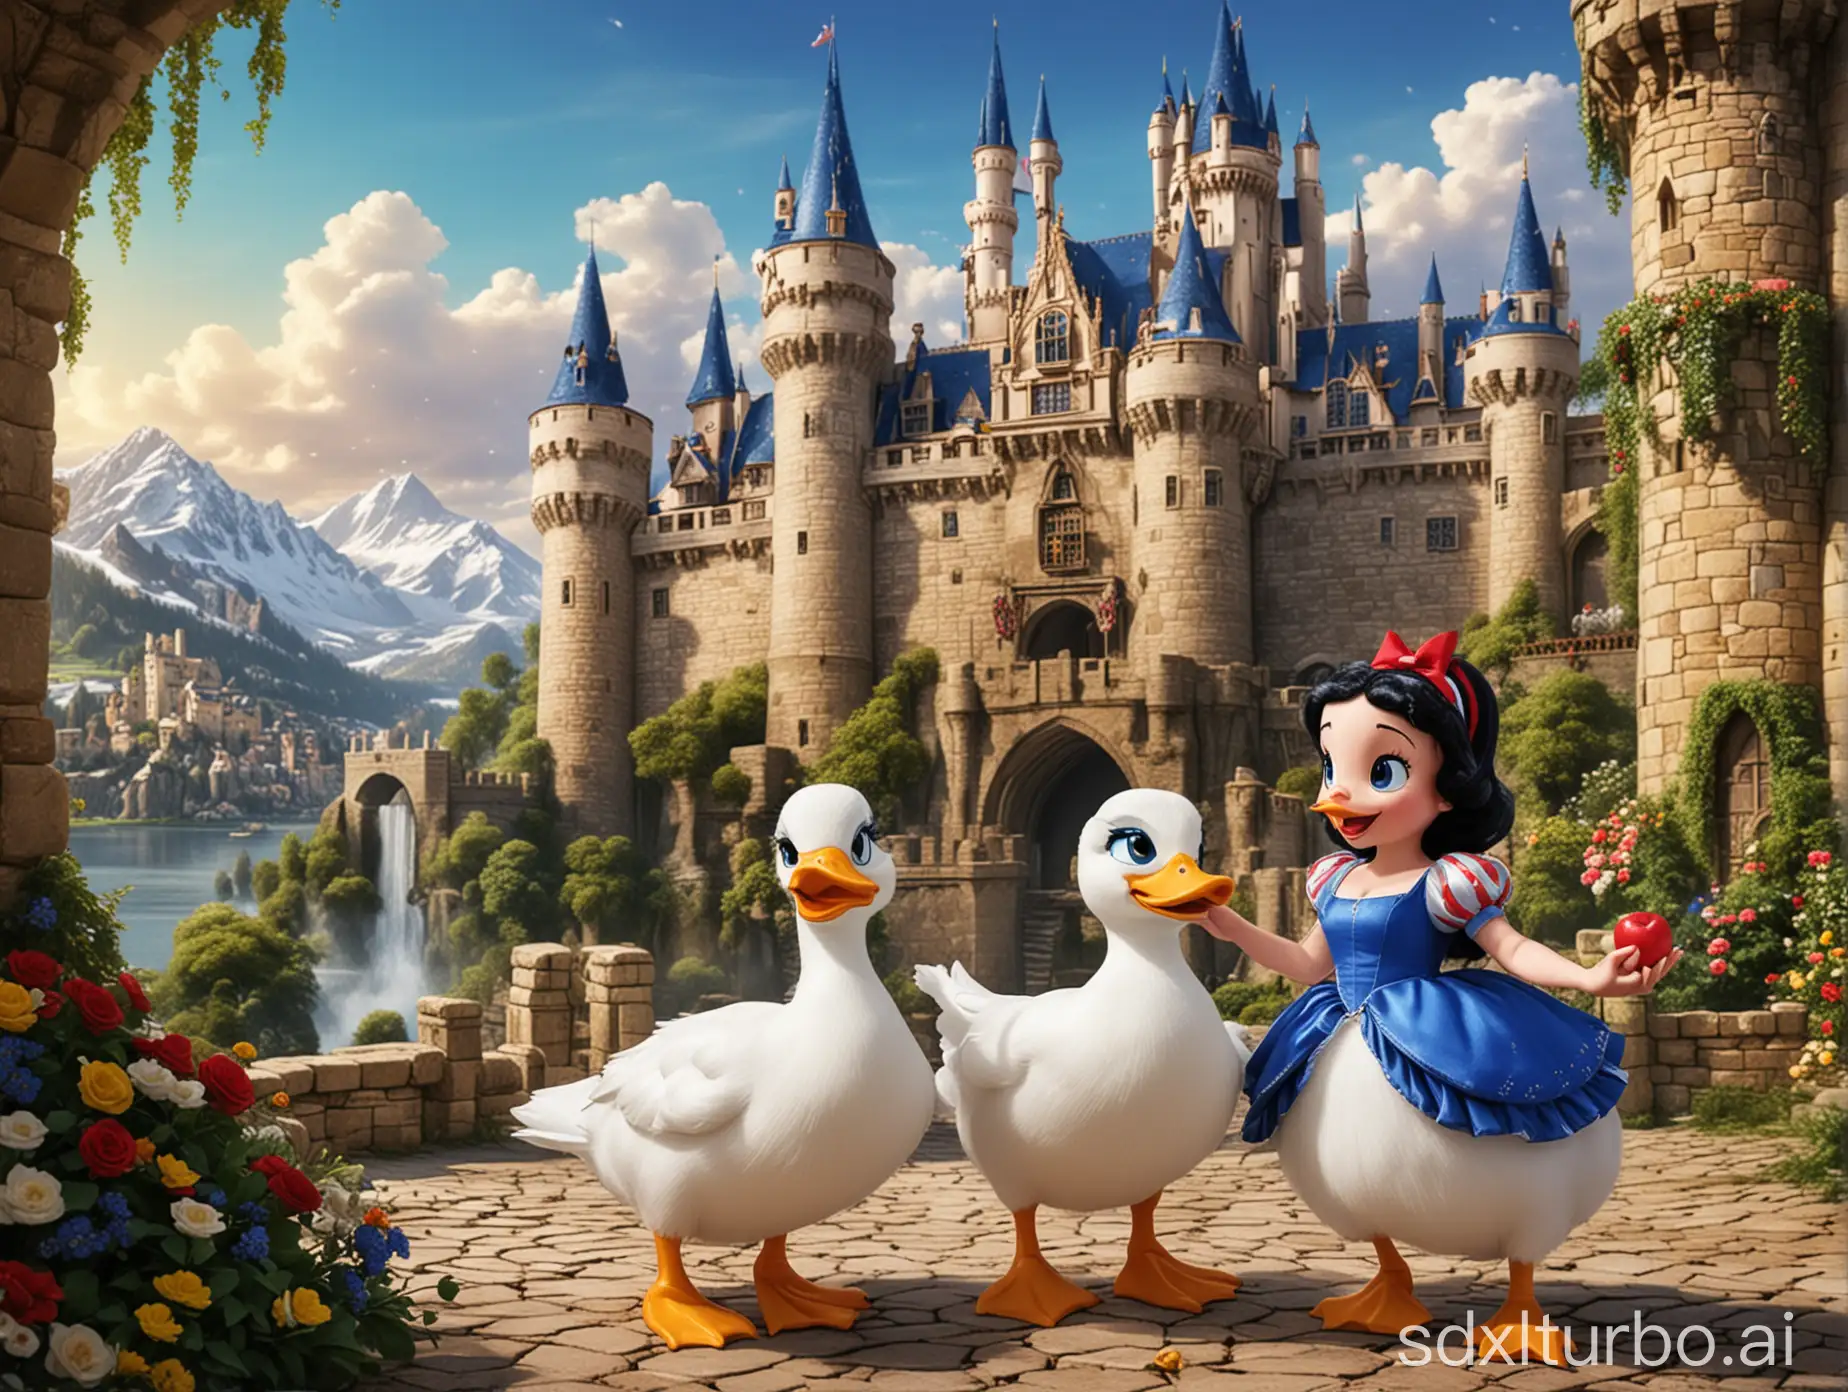 可达鸭和白雪公主在城堡

